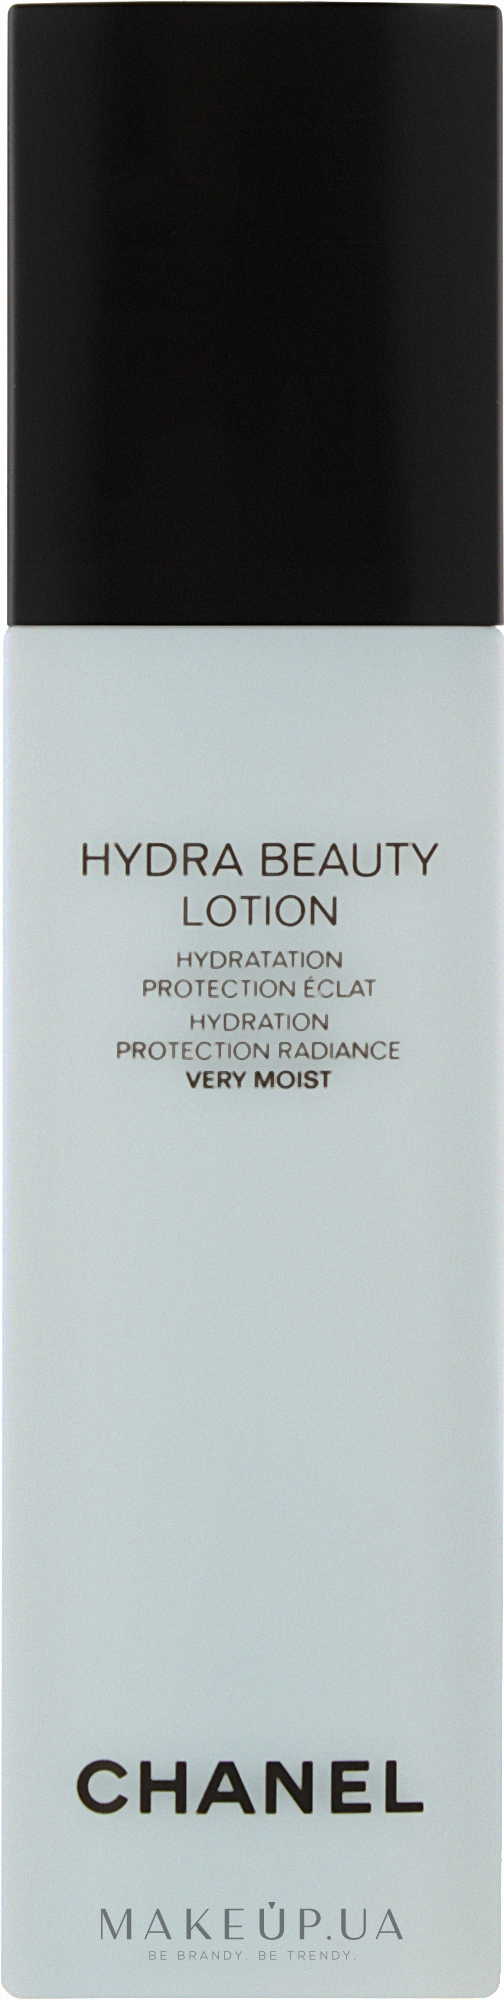 Hydra beauty lotion chanel способ применения tor browser настройка для торрент гидра